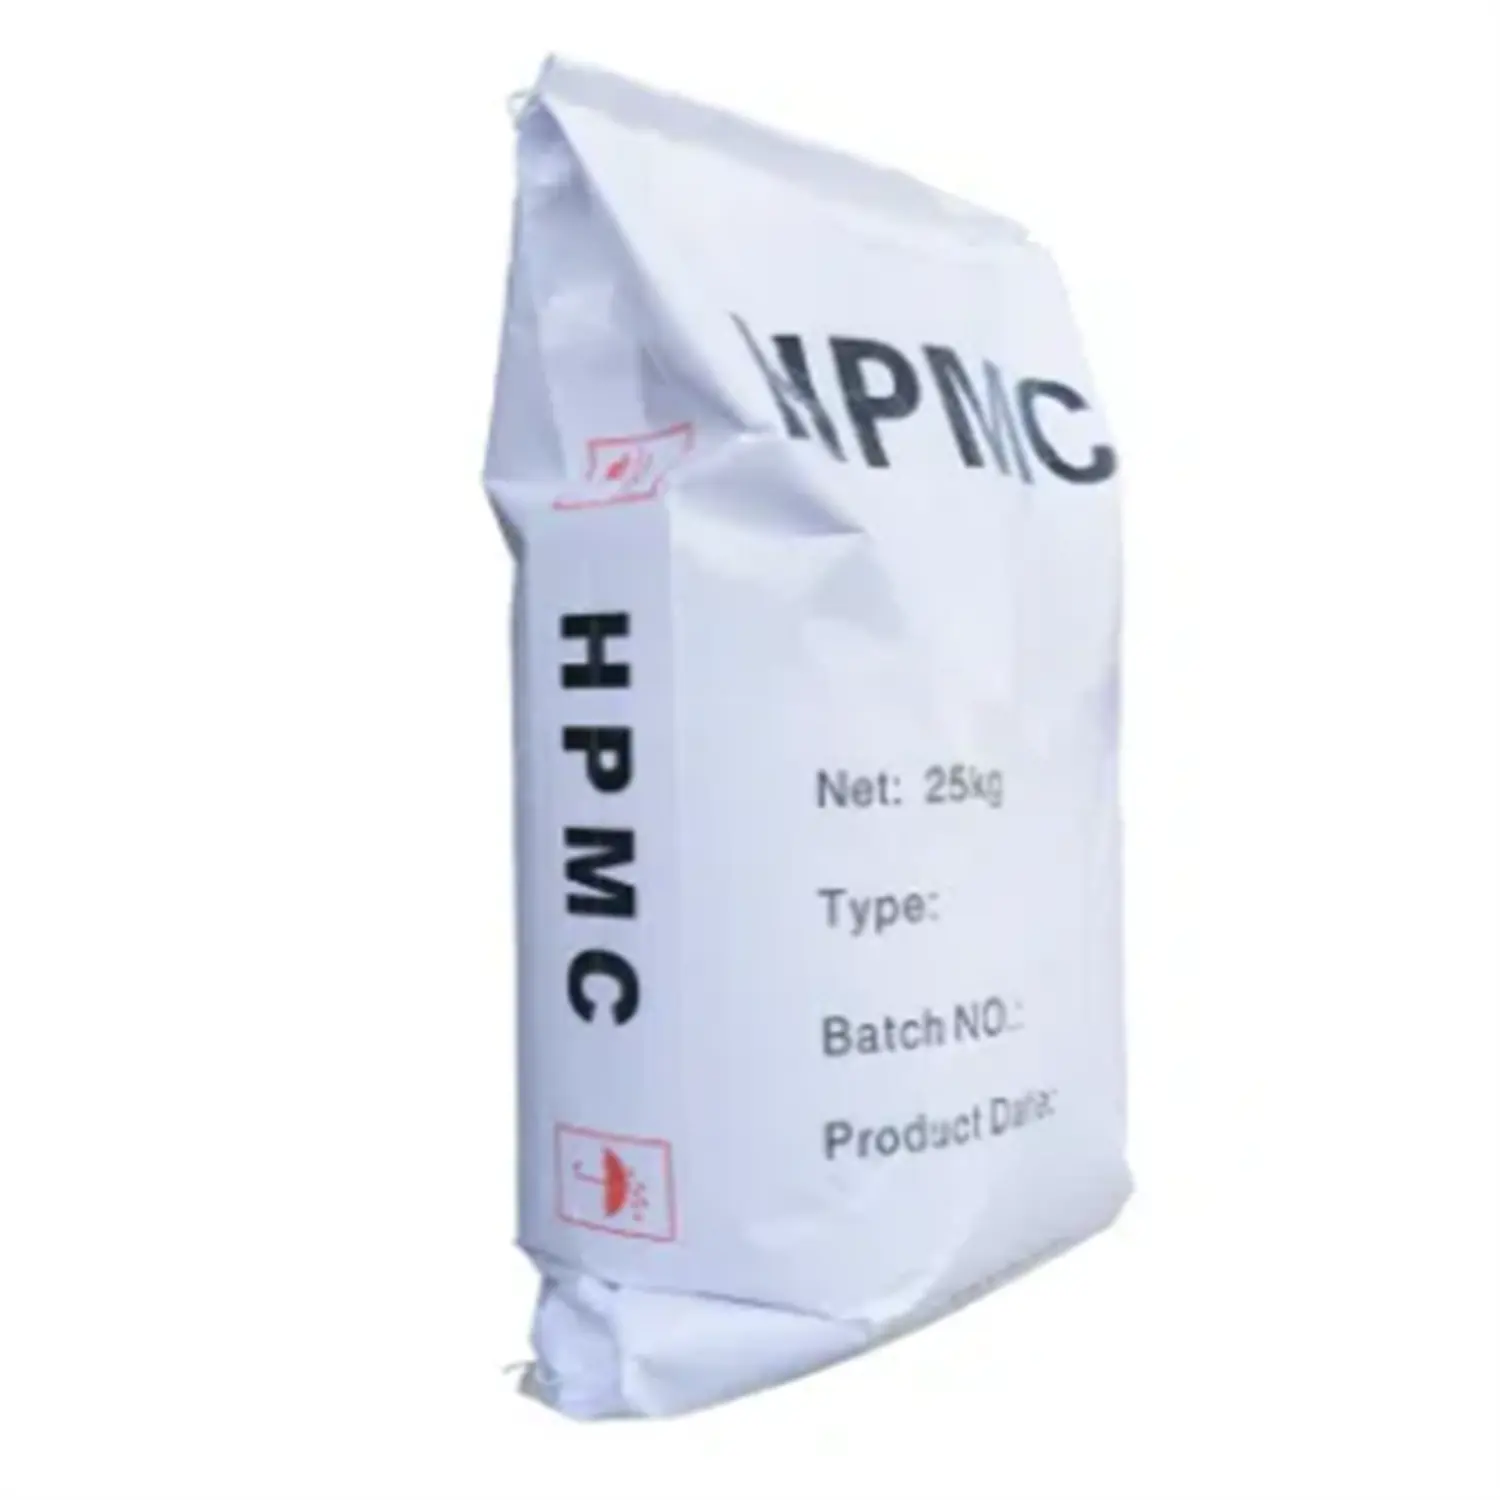 HPMC agen tambahan Kimia kualitas tinggi dan murah untuk perawatan air dan produksi kertas kimia